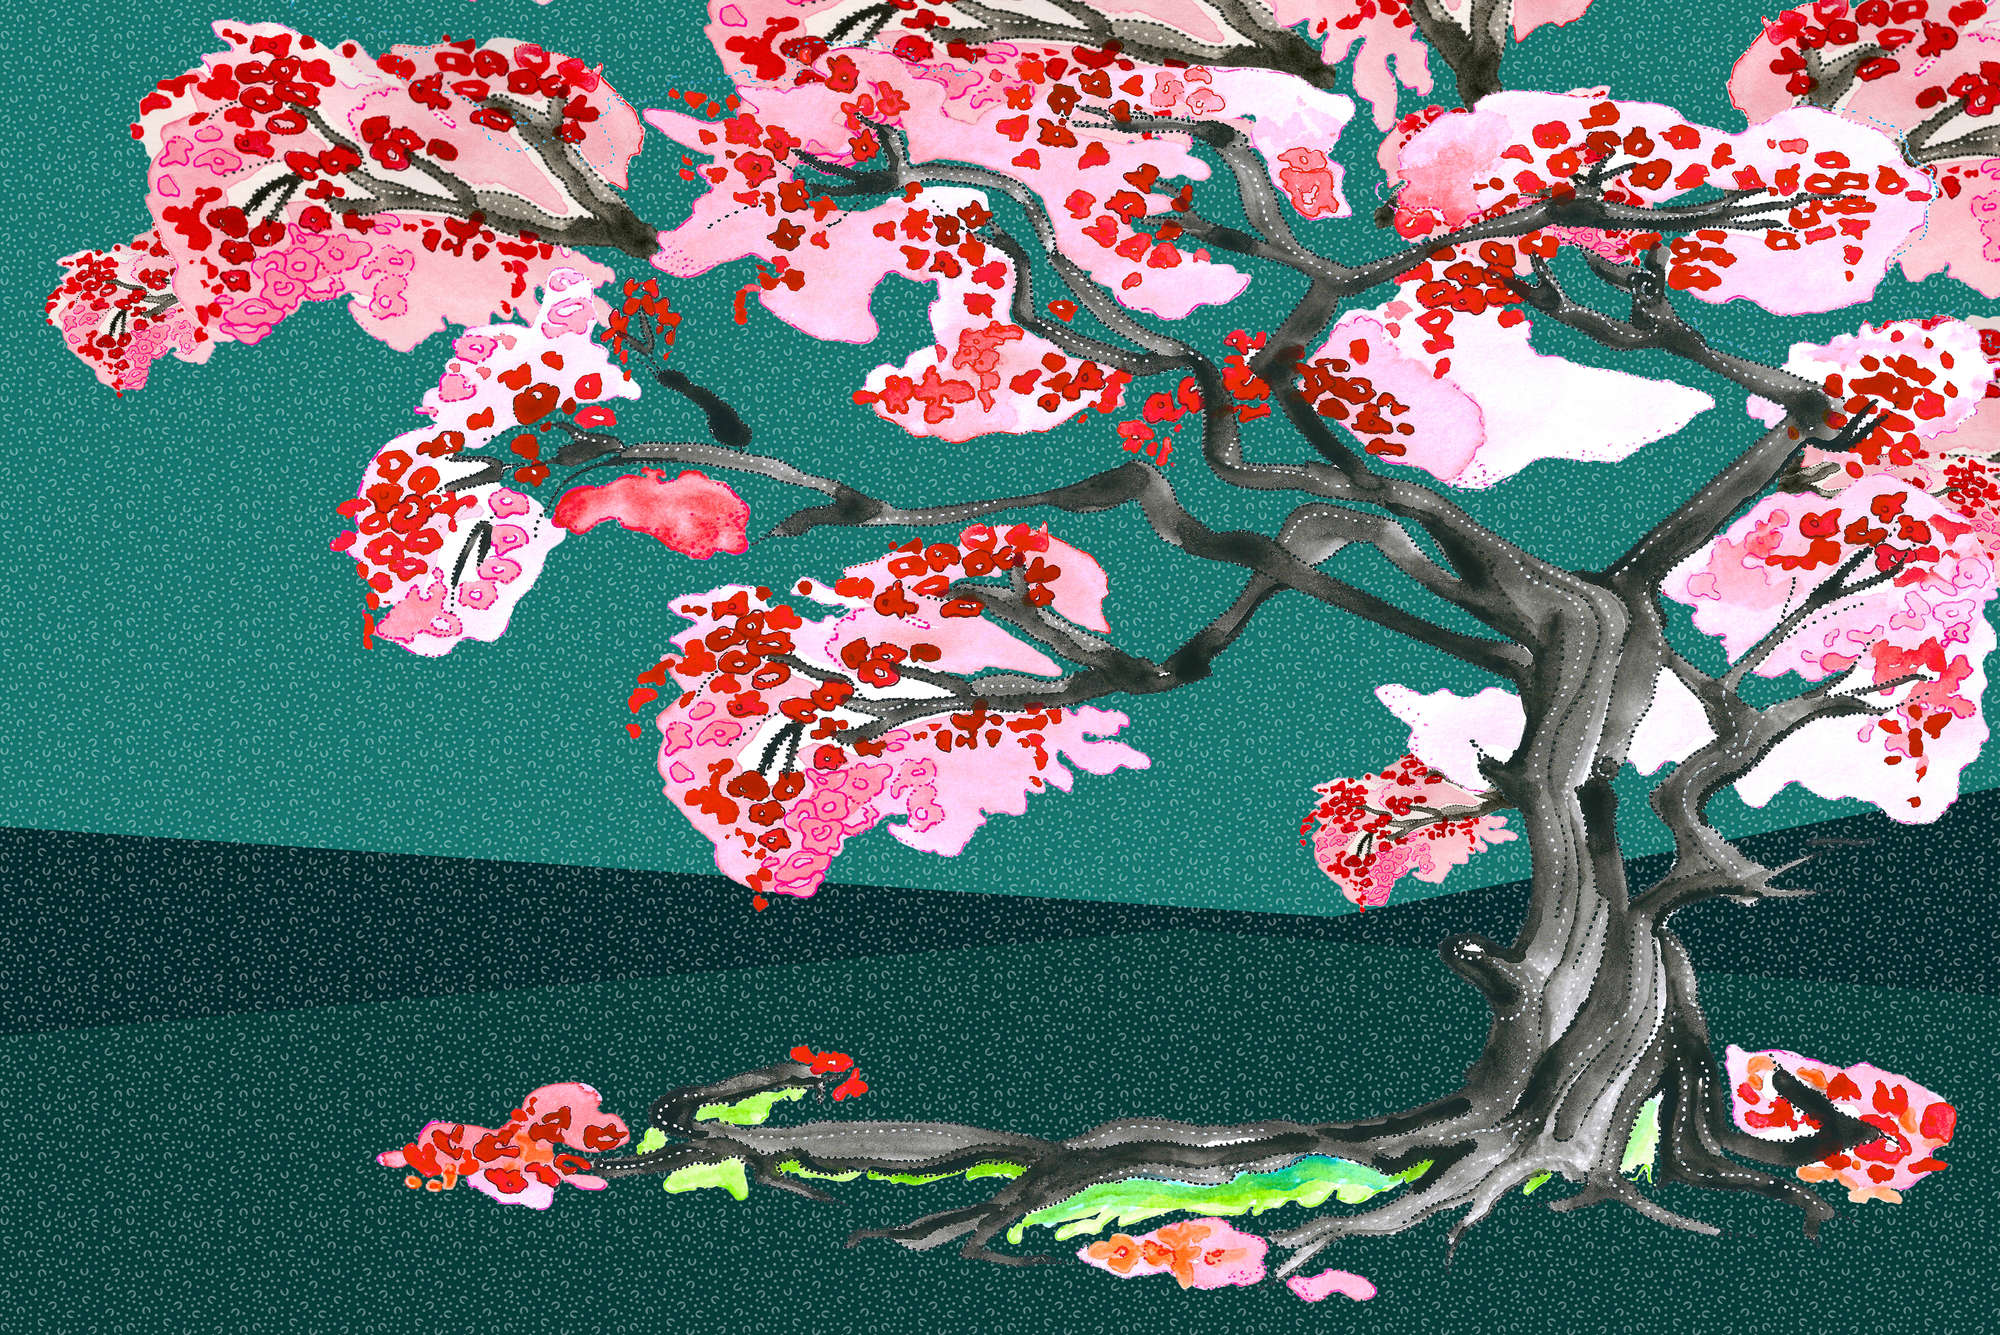             Papel pintado de flores de cerezo en estilo de cómic asiático sobre tejido no tejido liso nacarado
        